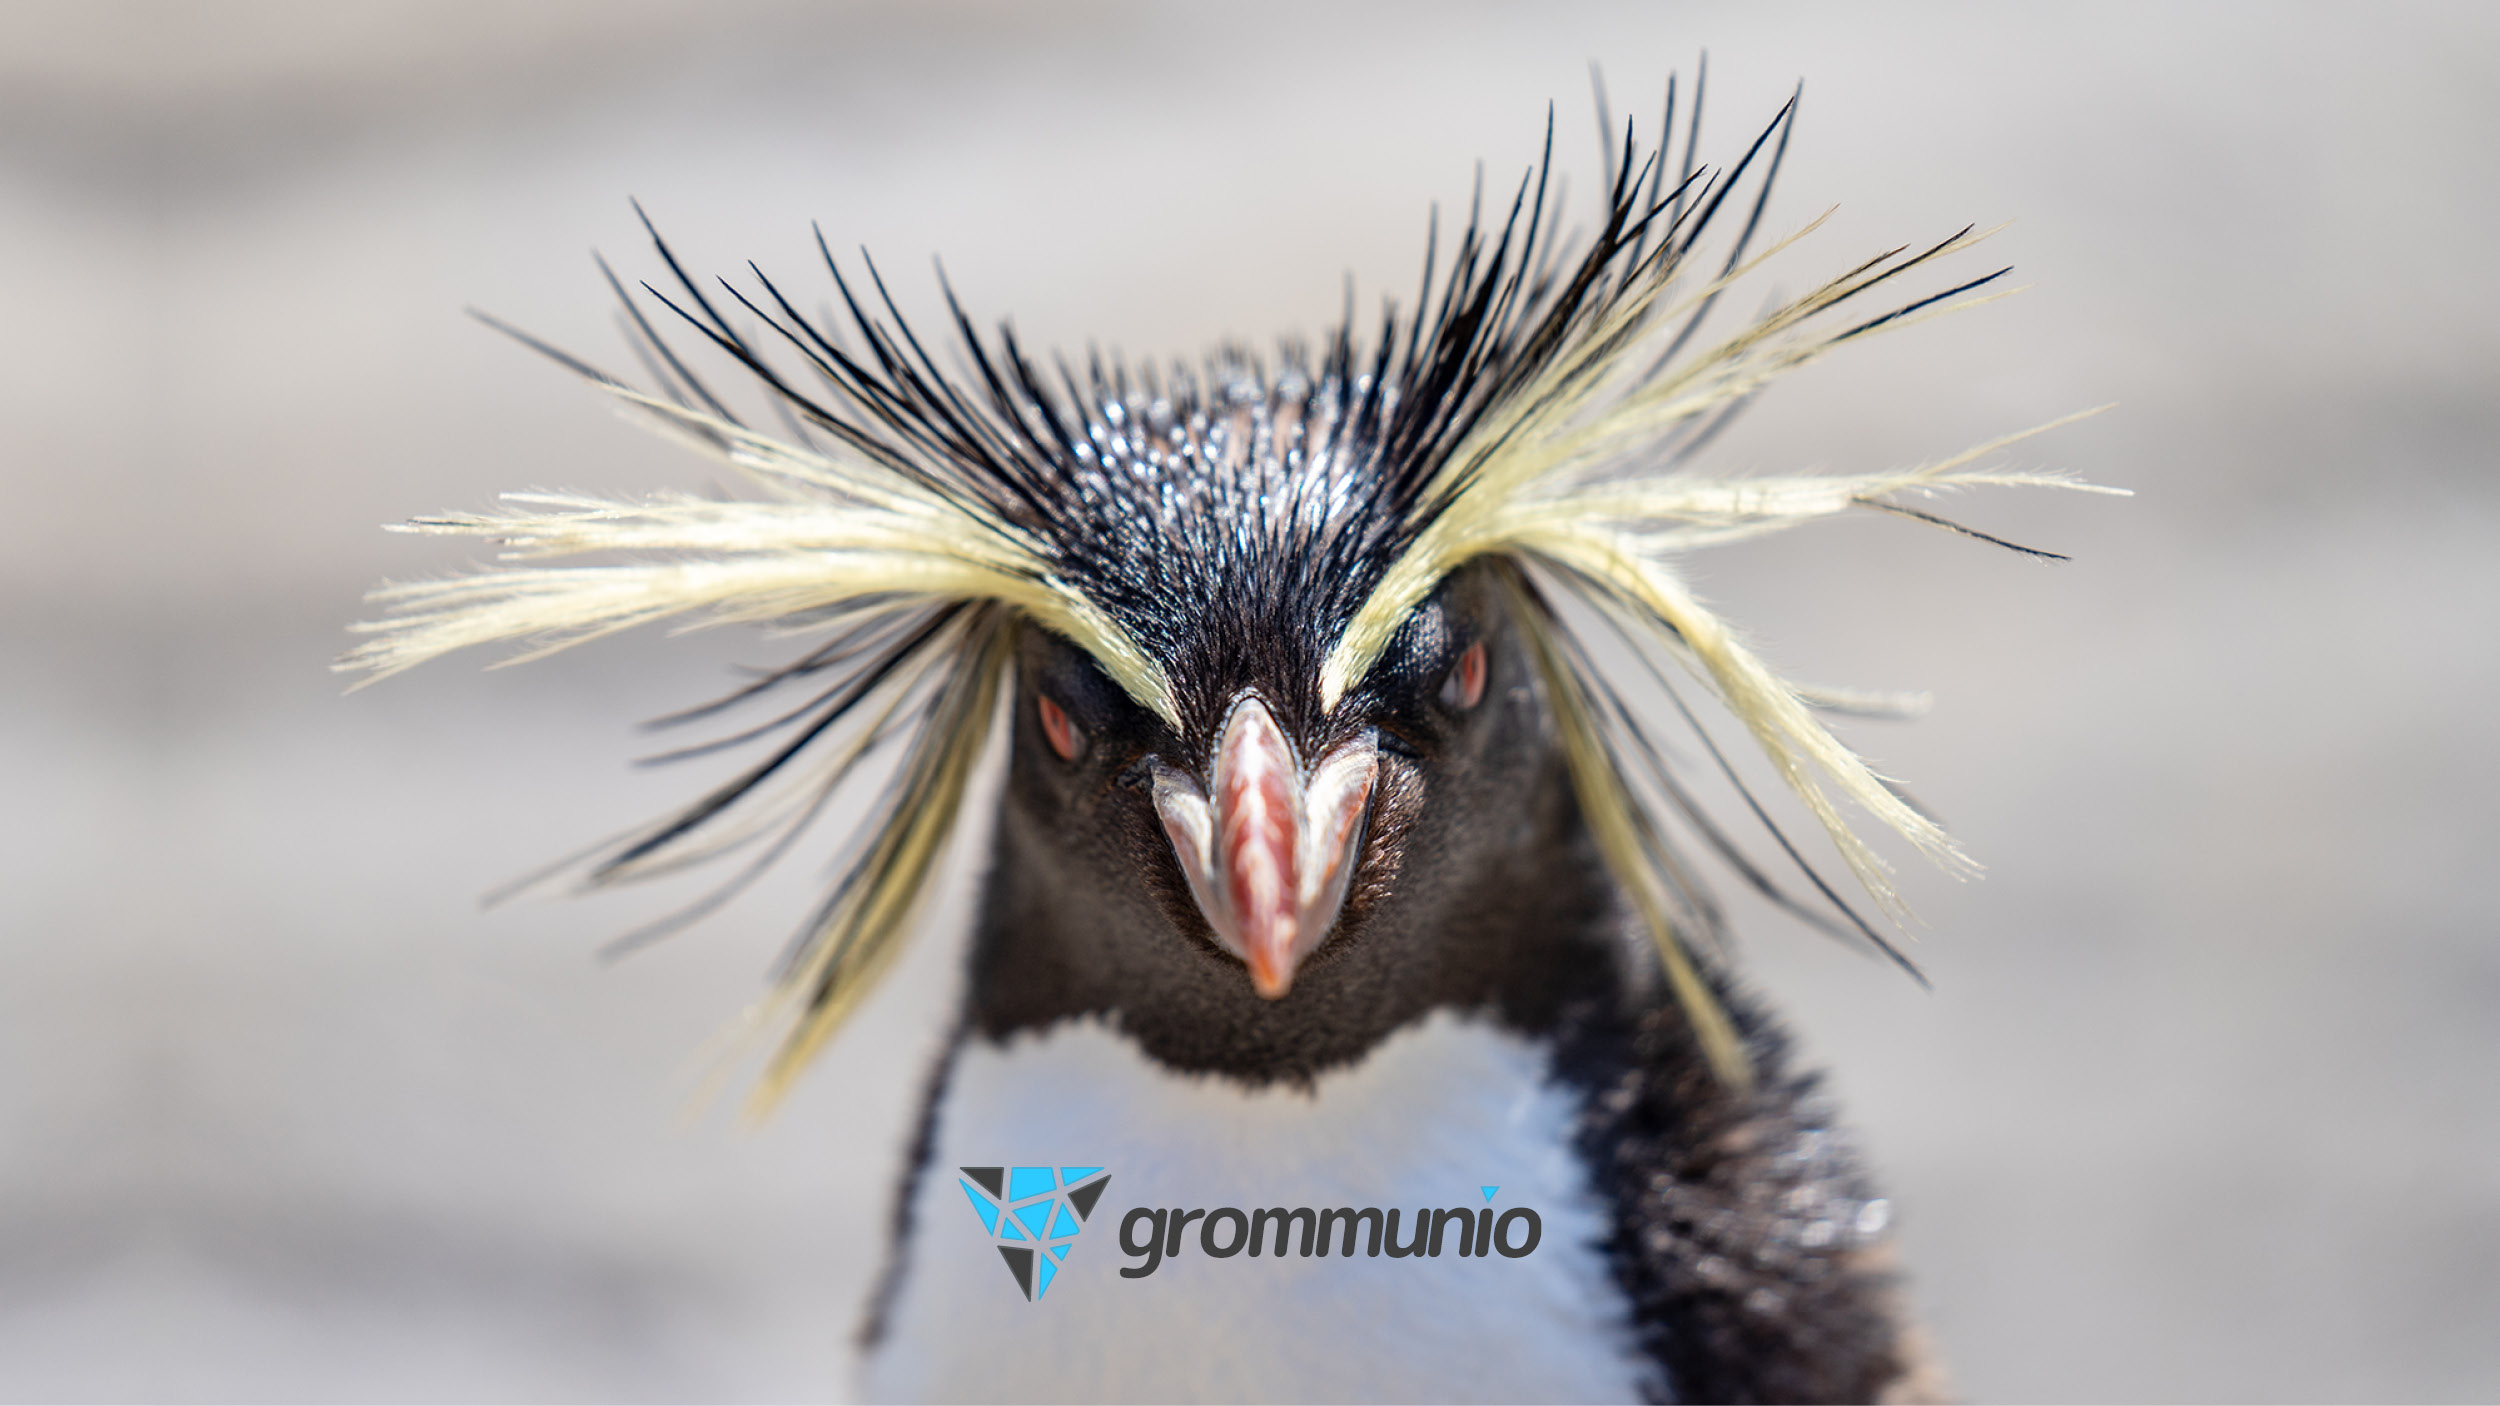 Upgrade to Linux: grommunio ist einer der ersten Unterstützer